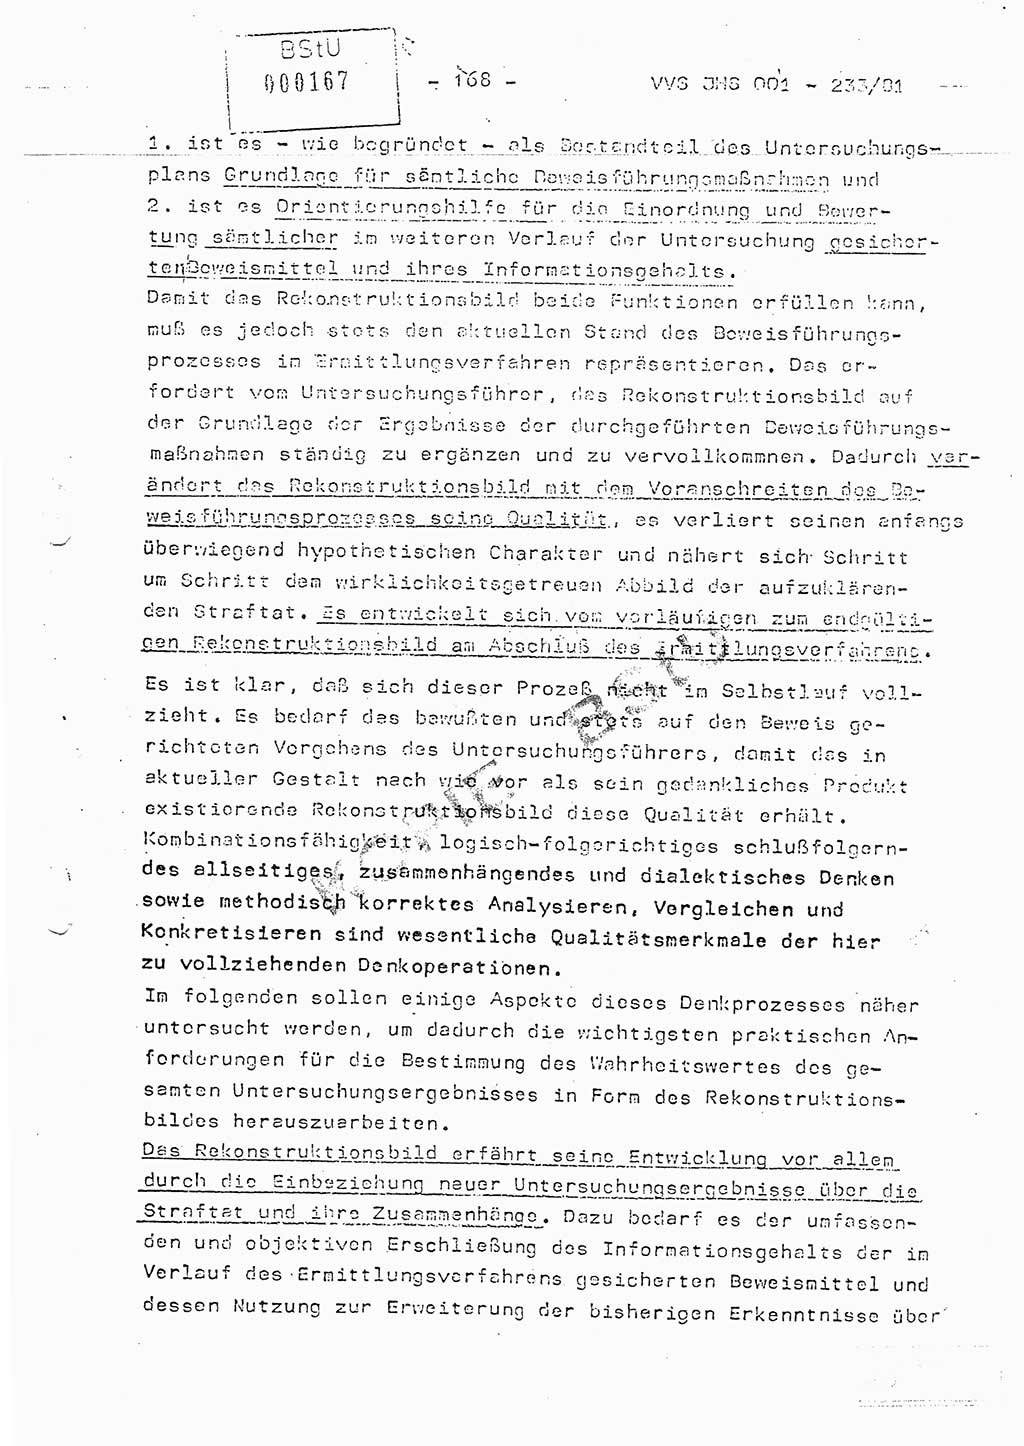 Dissertation Oberstleutnant Horst Zank (JHS), Oberstleutnant Dr. Karl-Heinz Knoblauch (JHS), Oberstleutnant Gustav-Adolf Kowalewski (HA Ⅸ), Oberstleutnant Wolfgang Plötner (HA Ⅸ), Ministerium für Staatssicherheit (MfS) [Deutsche Demokratische Republik (DDR)], Juristische Hochschule (JHS), Vertrauliche Verschlußsache (VVS) o001-233/81, Potsdam 1981, Blatt 168 (Diss. MfS DDR JHS VVS o001-233/81 1981, Bl. 168)